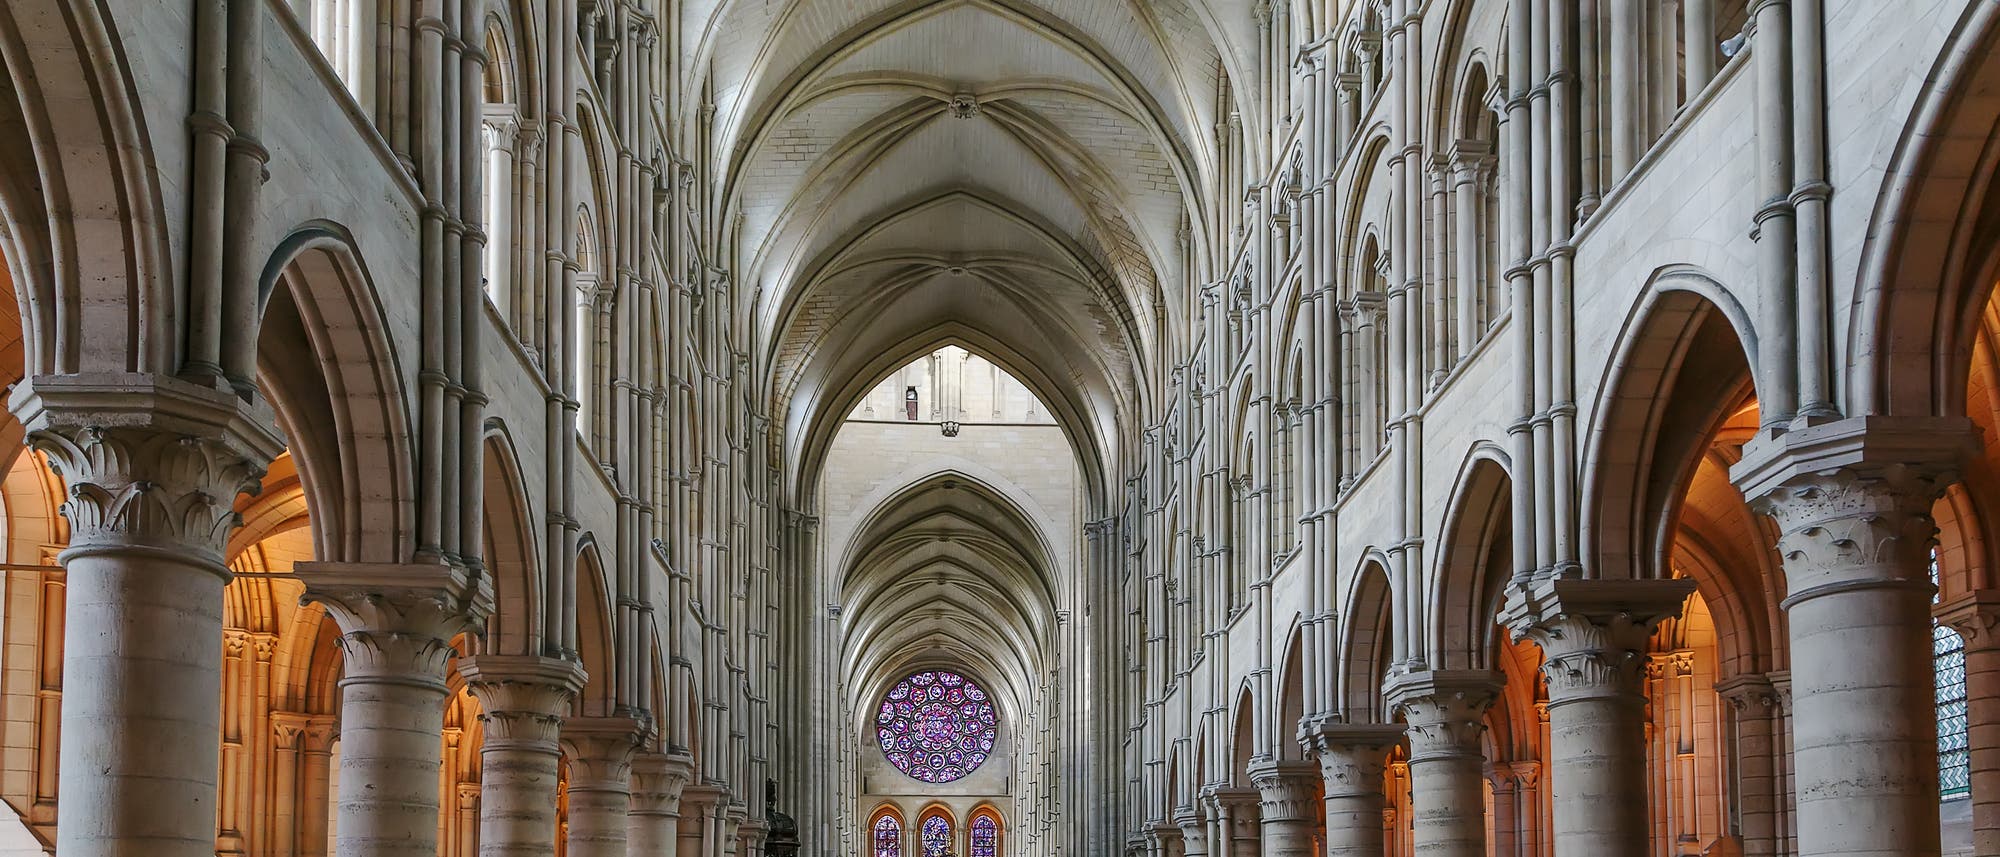 Die Kathedrale von Laon, errichtet ab 1170, ist eine der bedeutendsten Domkirchen Frankreichs.